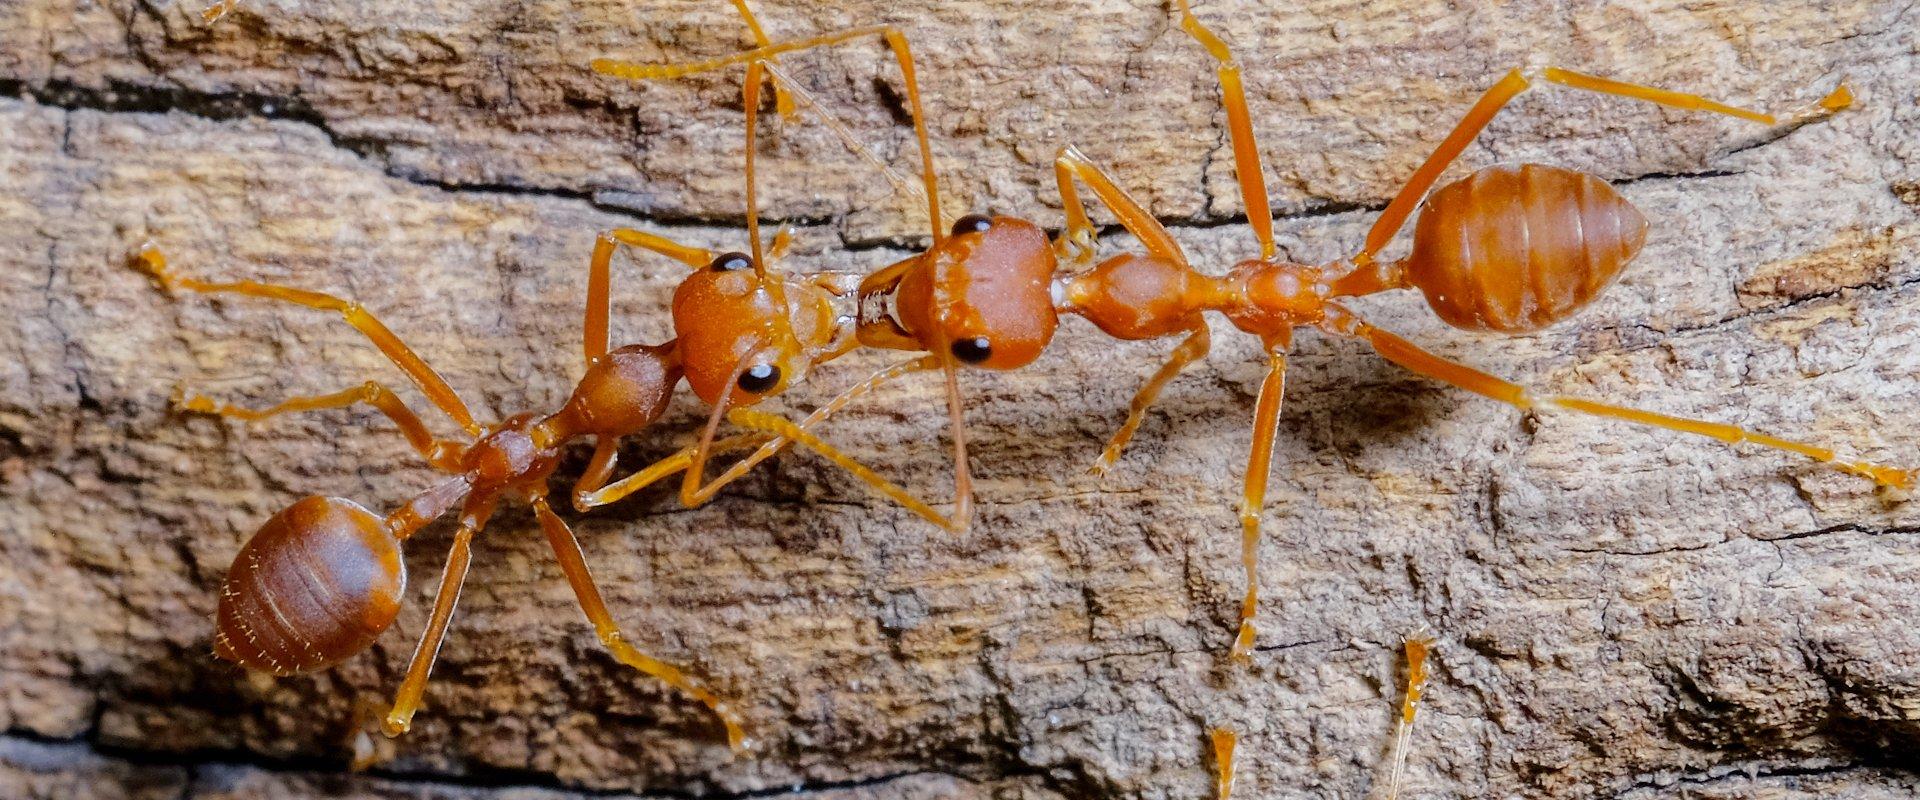 fire ants on tree